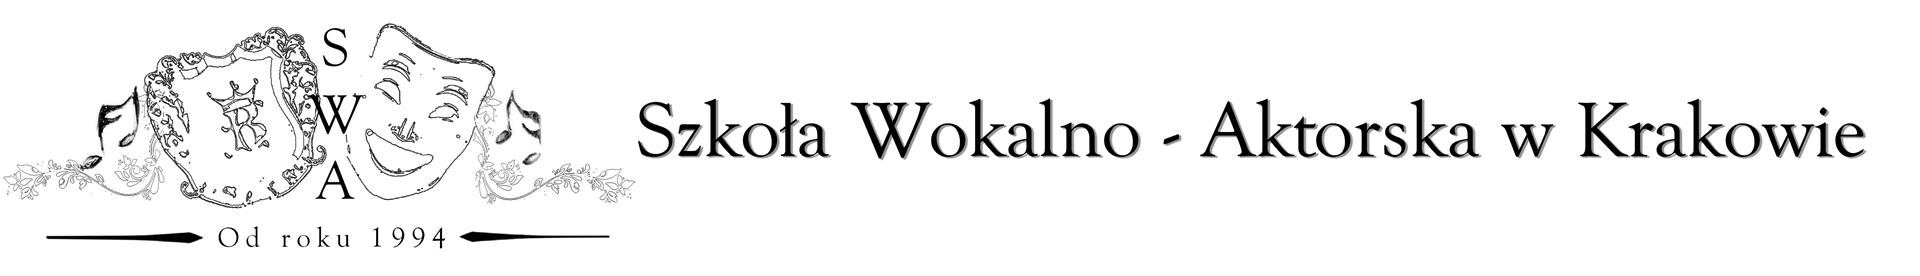 logo szkoły Wokalno - Aktorskiej